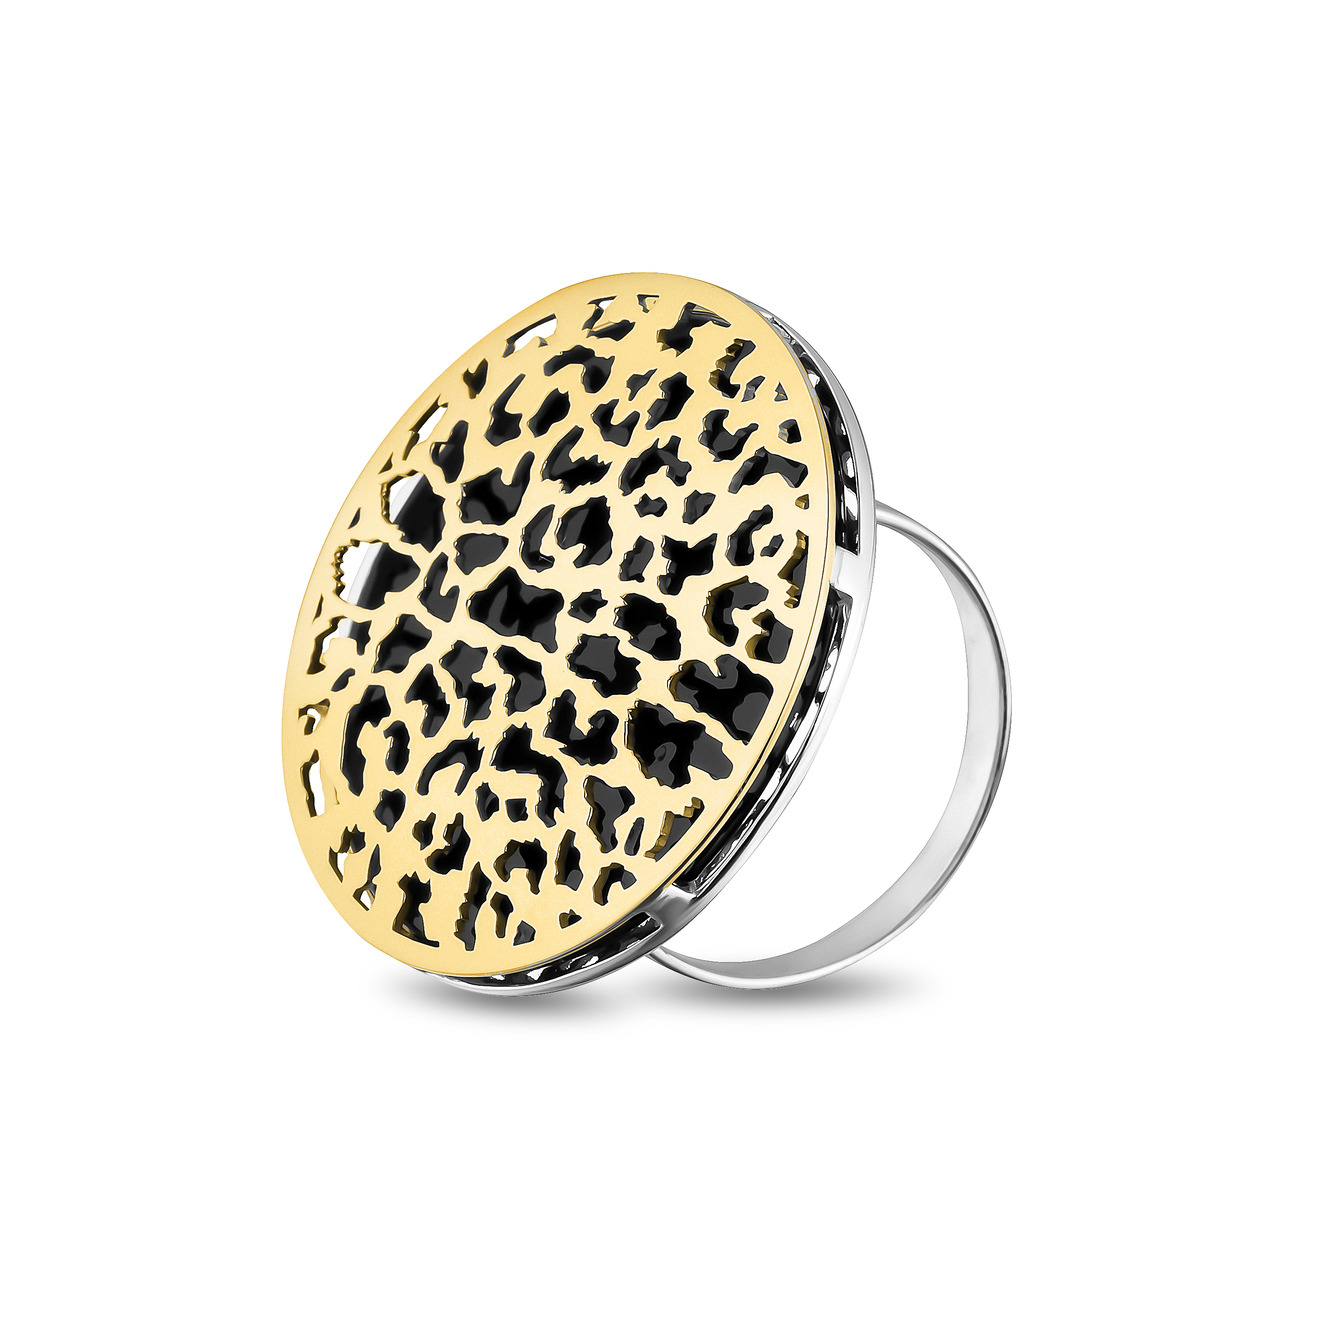 LUTA Jewelry Большое позолоченное кольцо из серебра c леопардовым узором luta jewelry позолоченное колье клевер из серебра